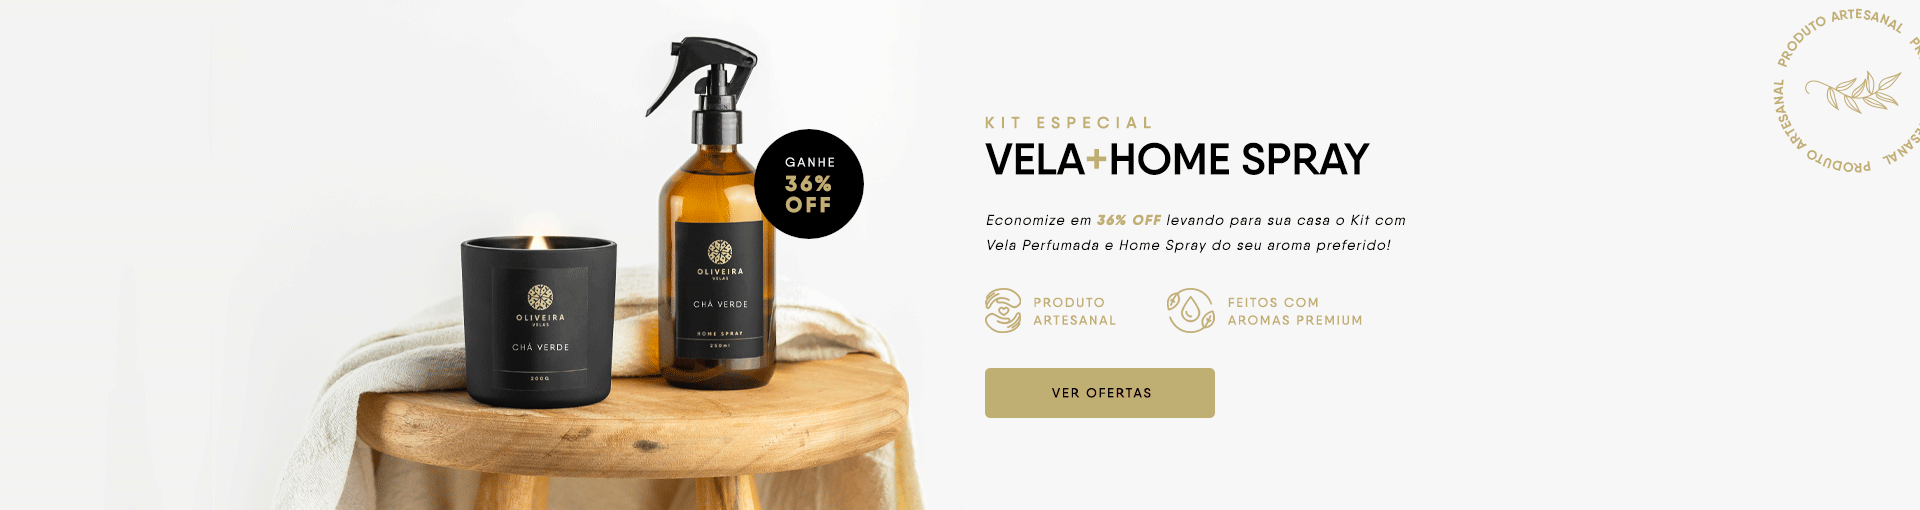 Velas Aromáticas e Home Sprays - Kit Especial - Oliveira Velas